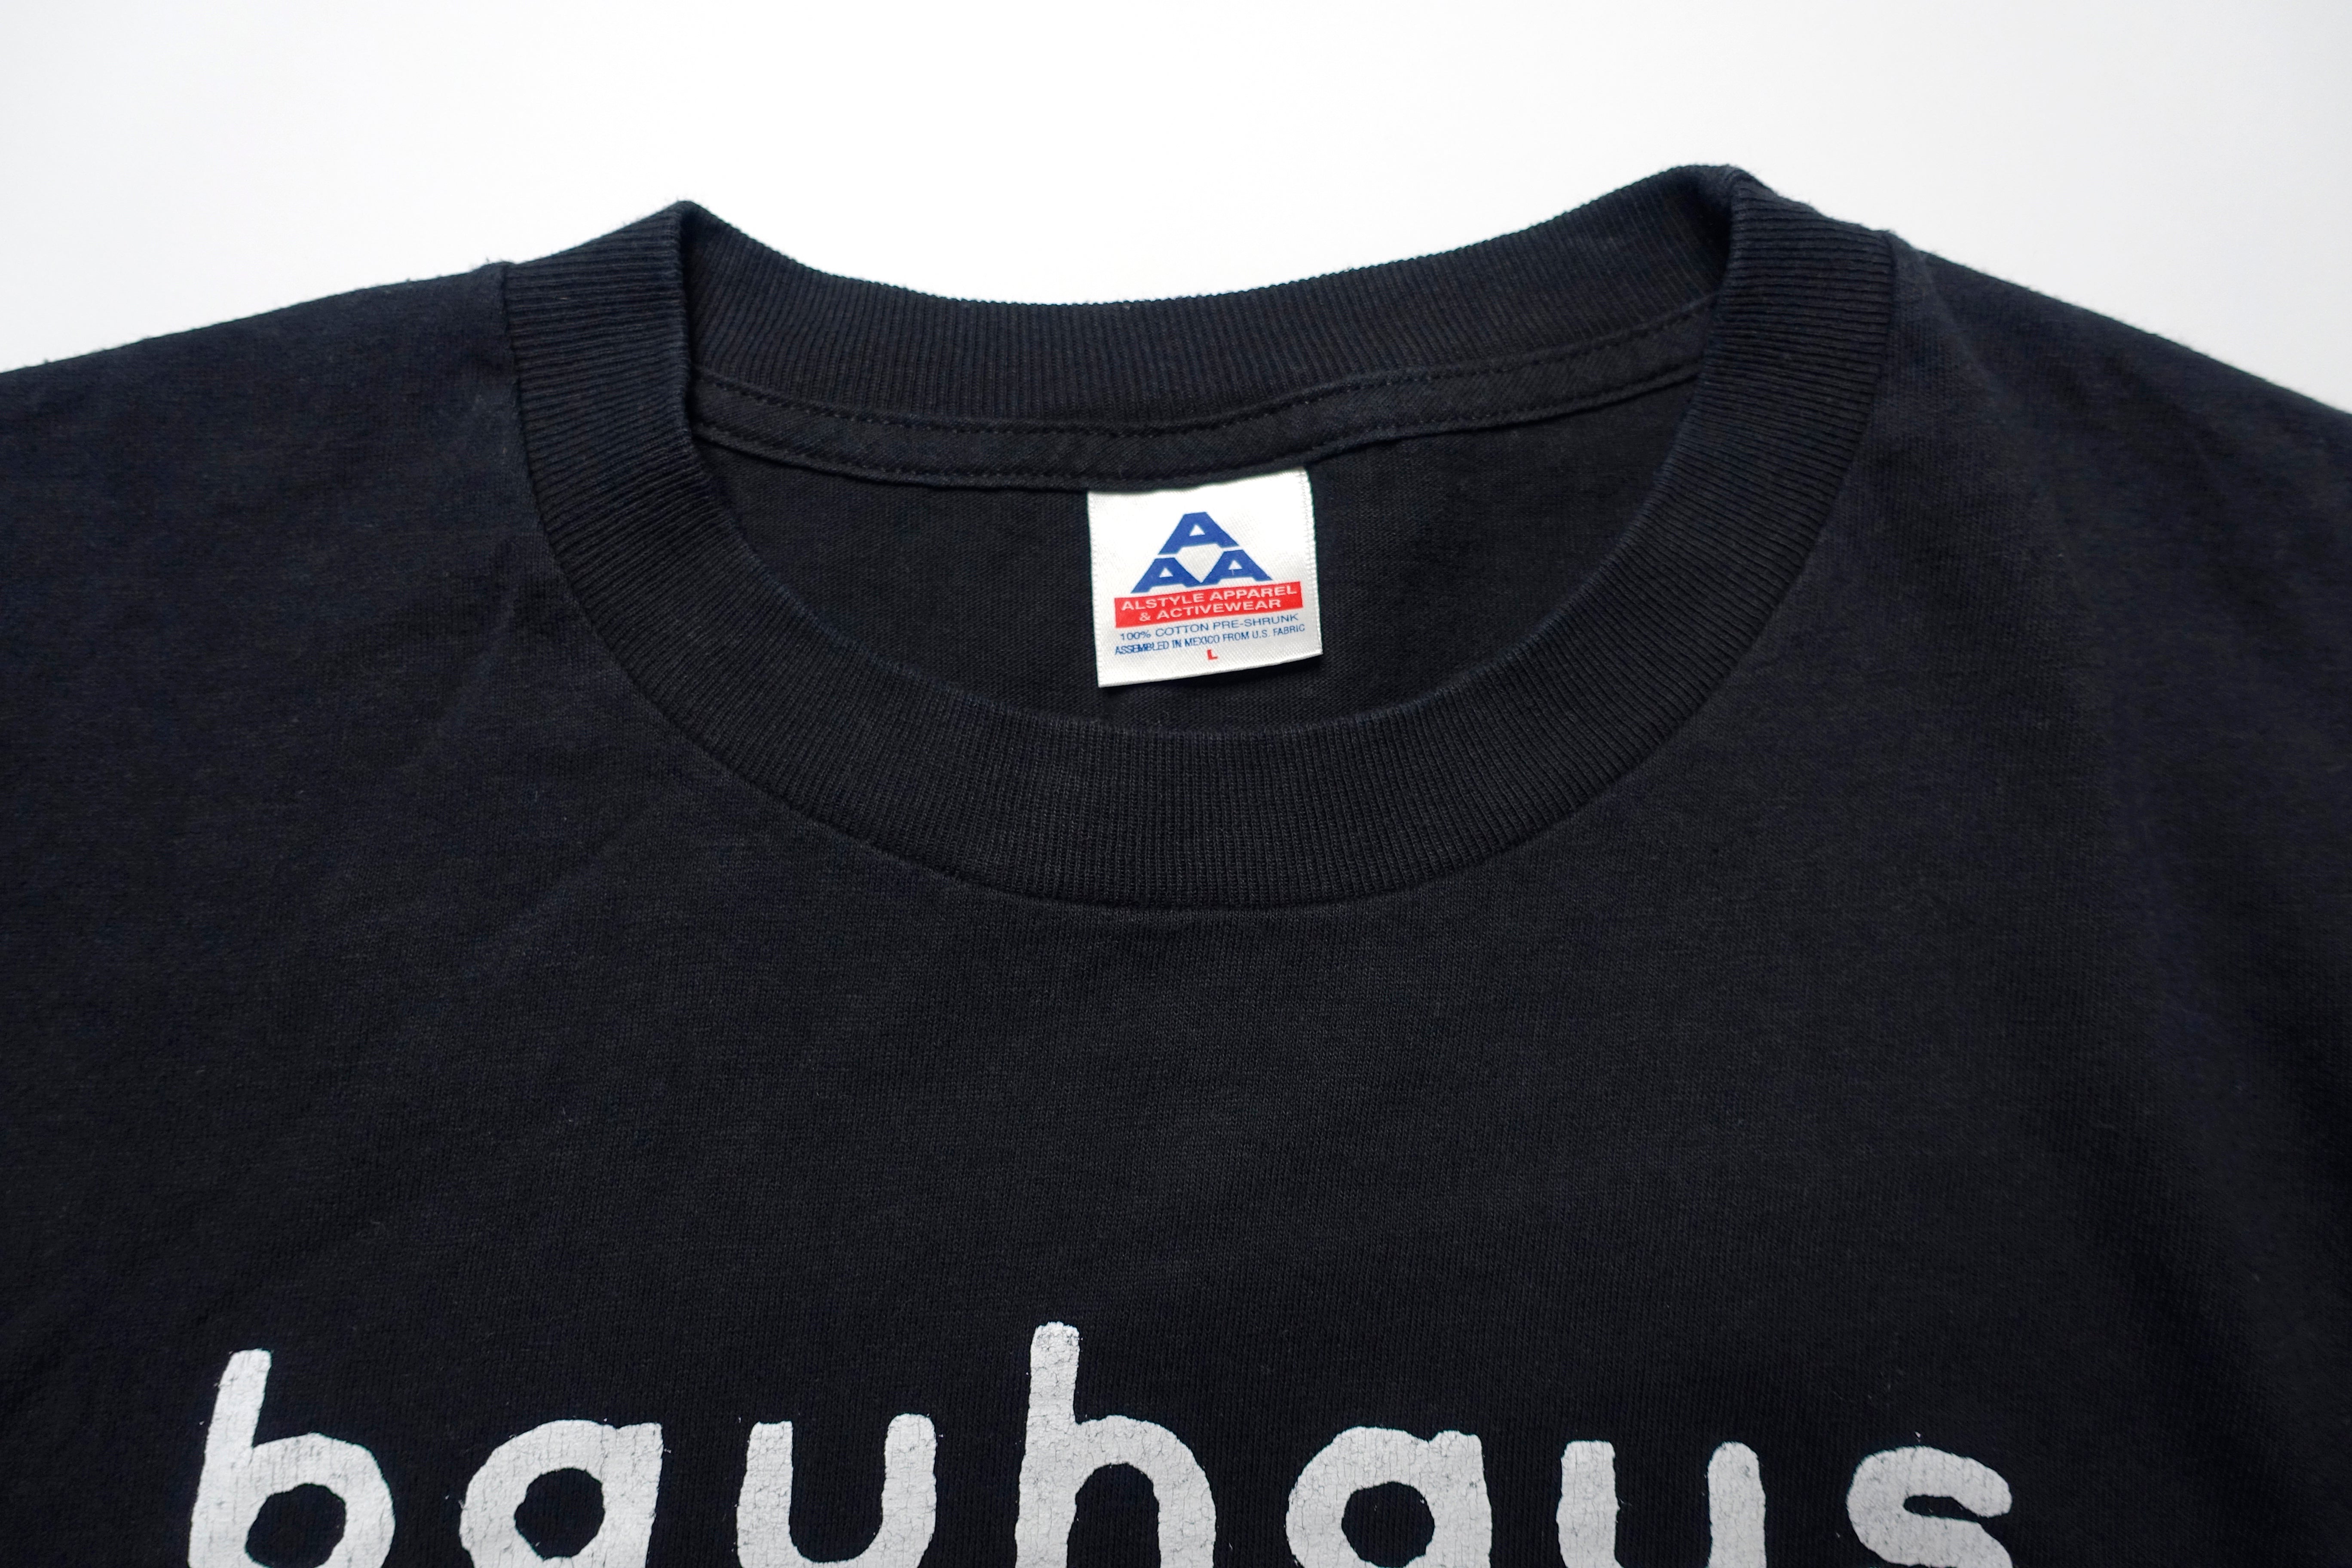 Bauhaus - Peter Murphy Face 90's Tour Shirt Size Large